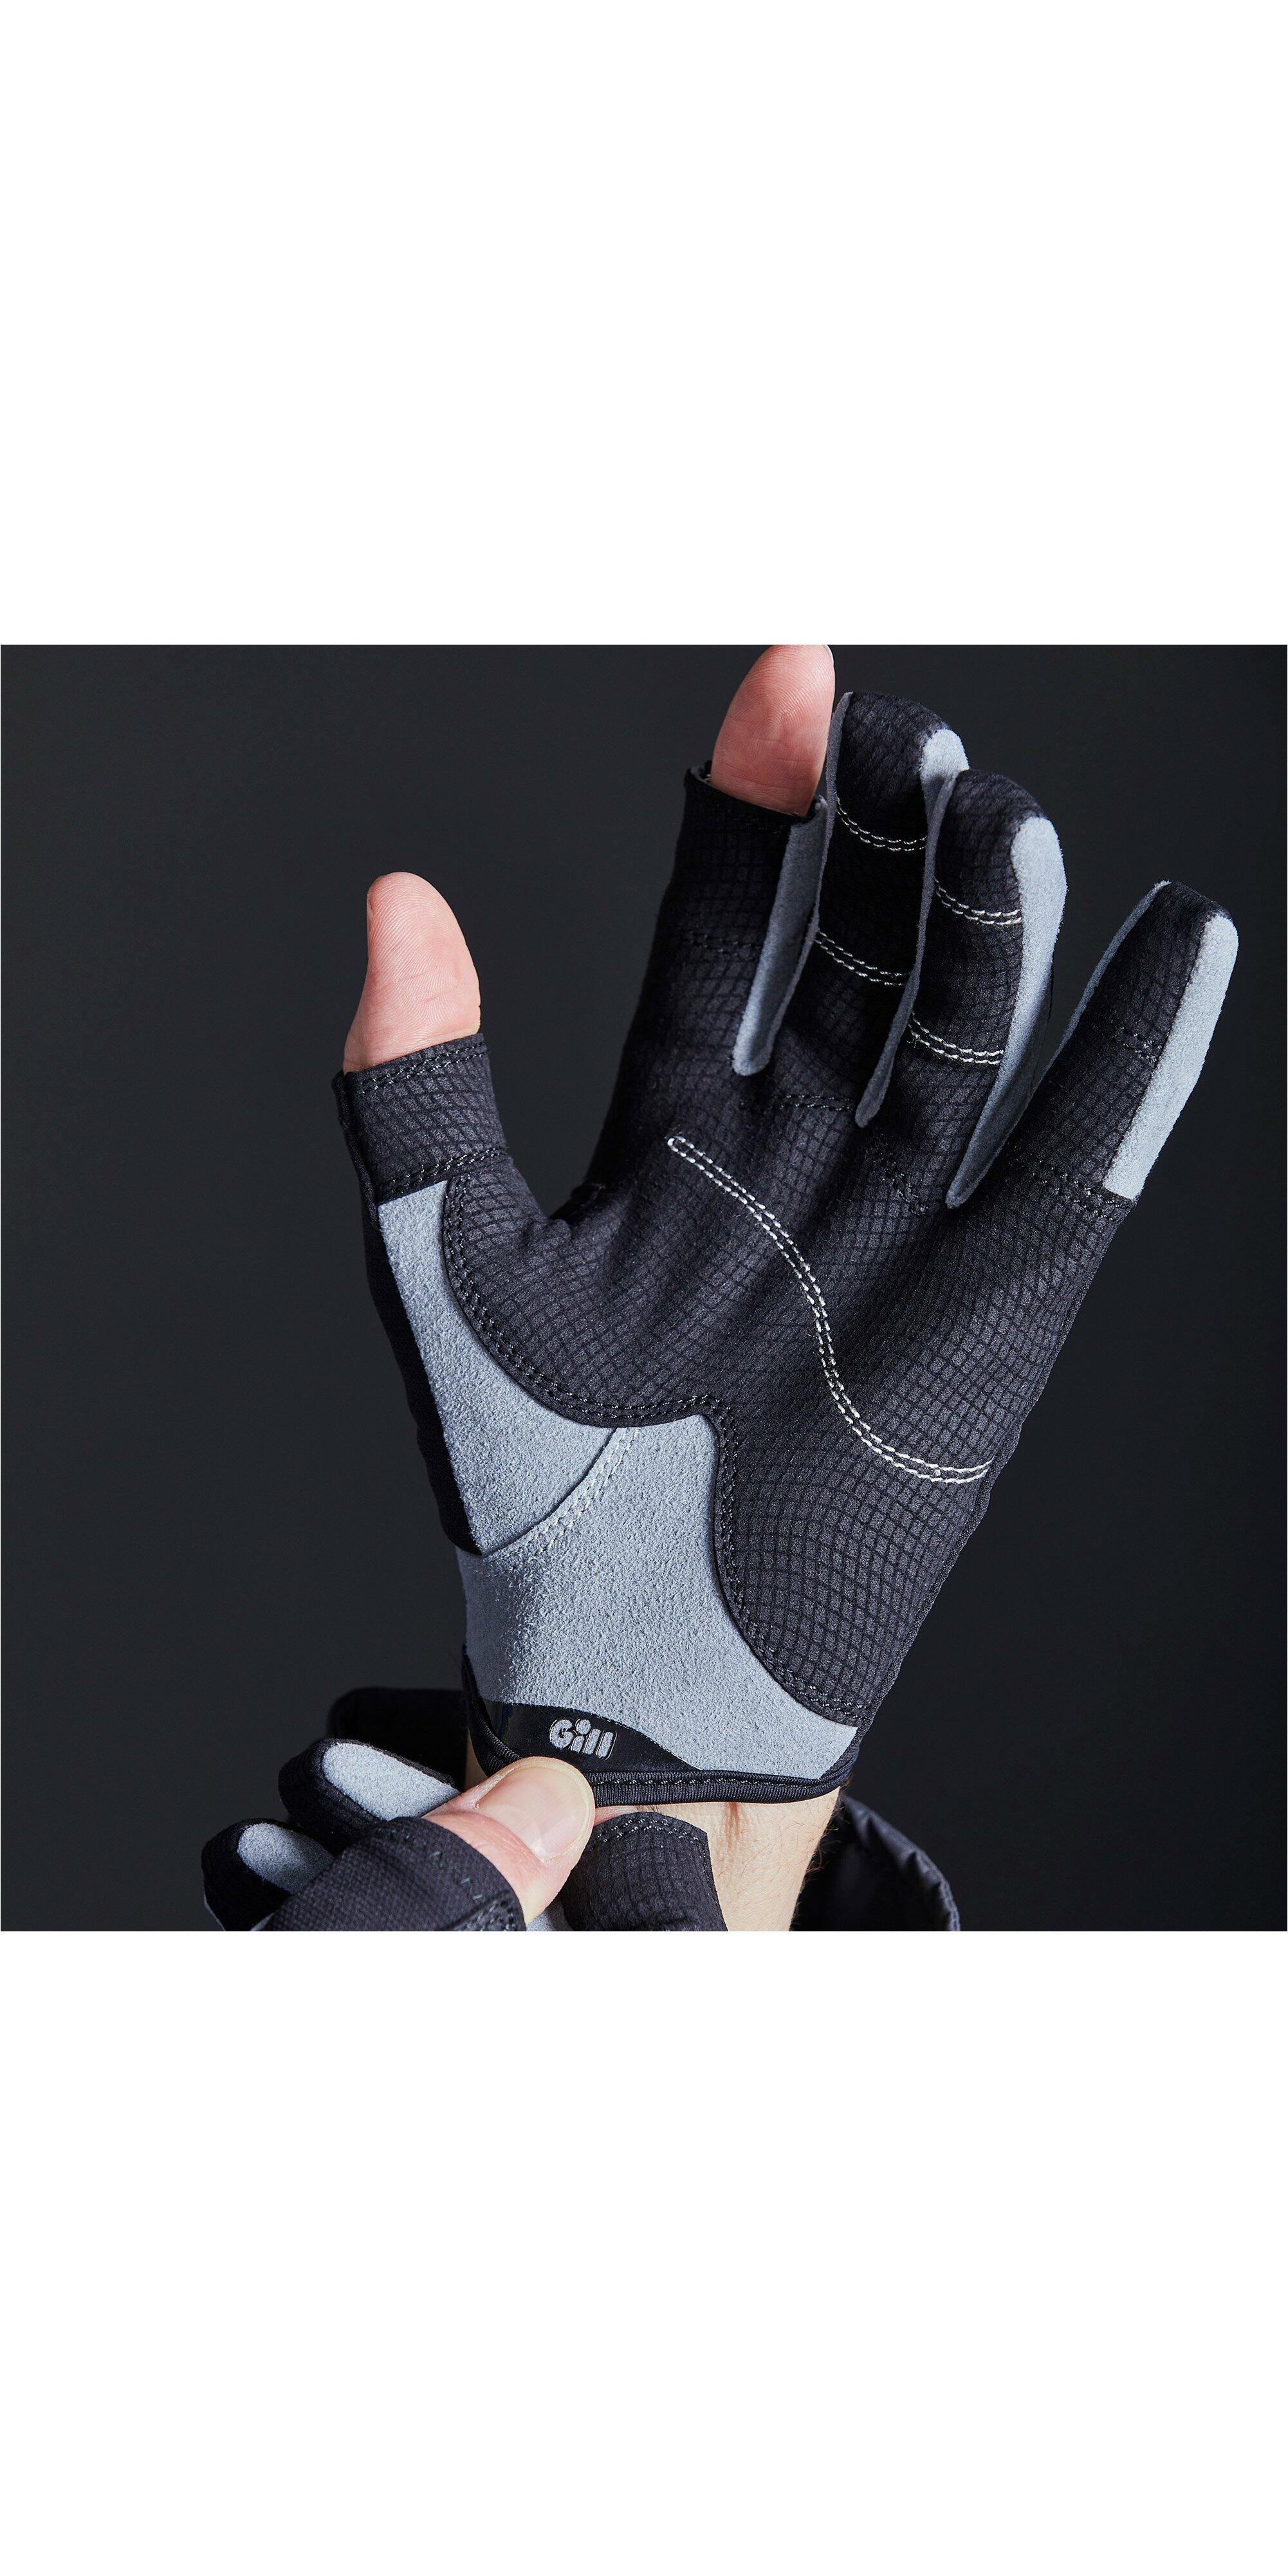 Deckhand Long Finger Gloves 7/7